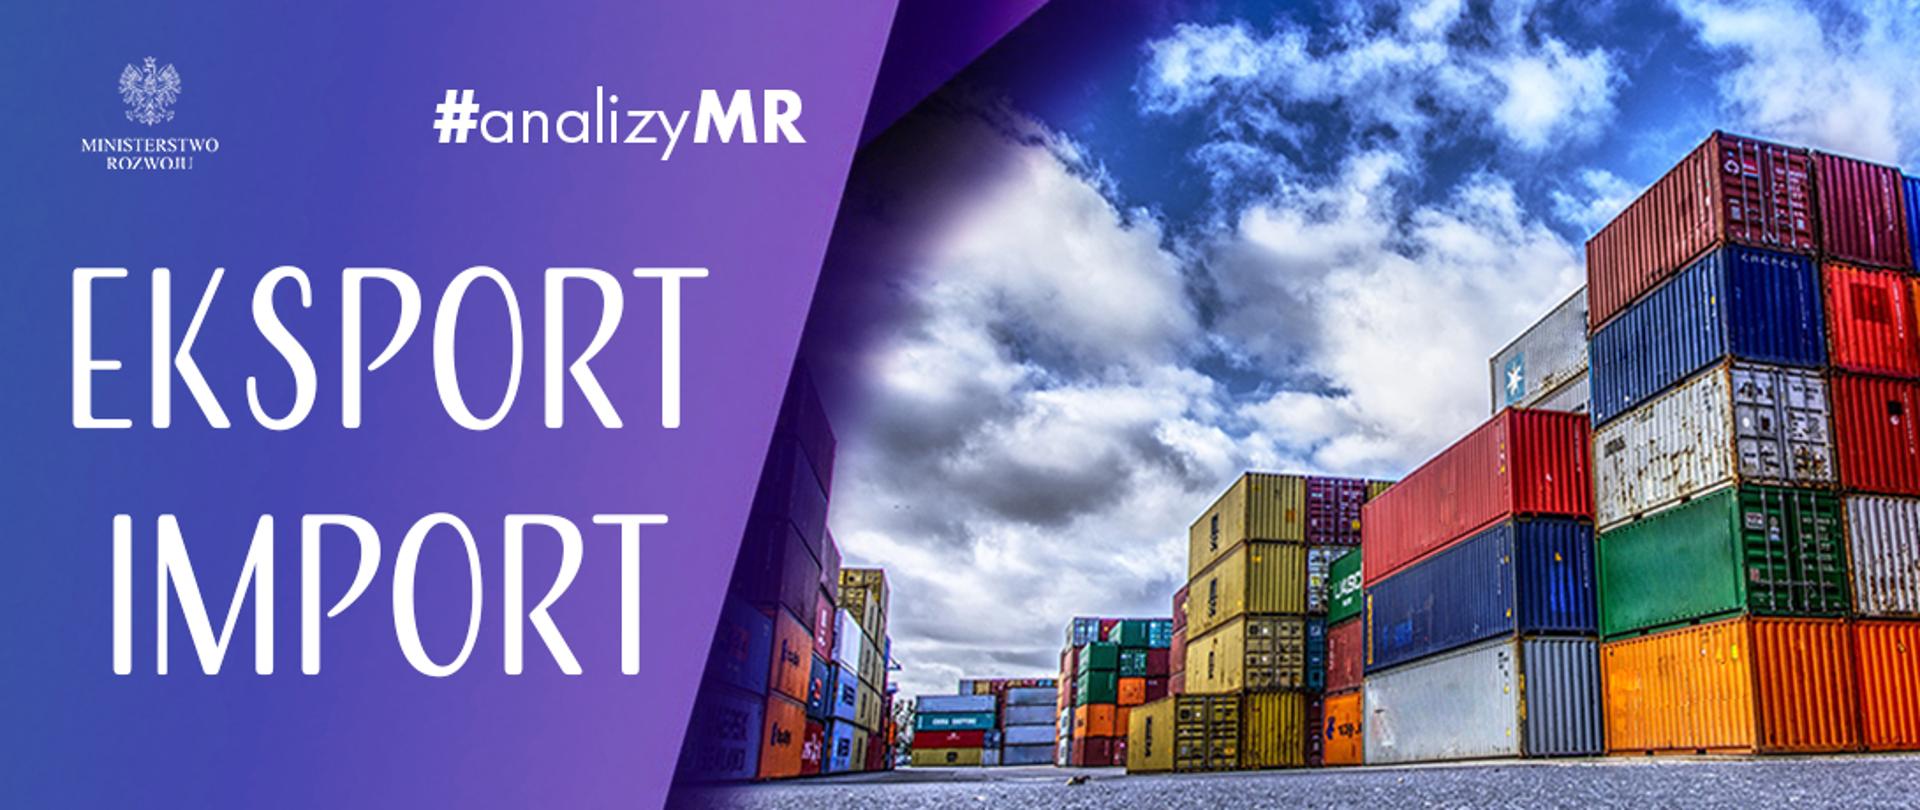 Po lewej stronie na fioletowym tle napisy eksport import, logo MR i napis #analizyMR, po prawej stronie zdjęcie przedstawiające kontenery